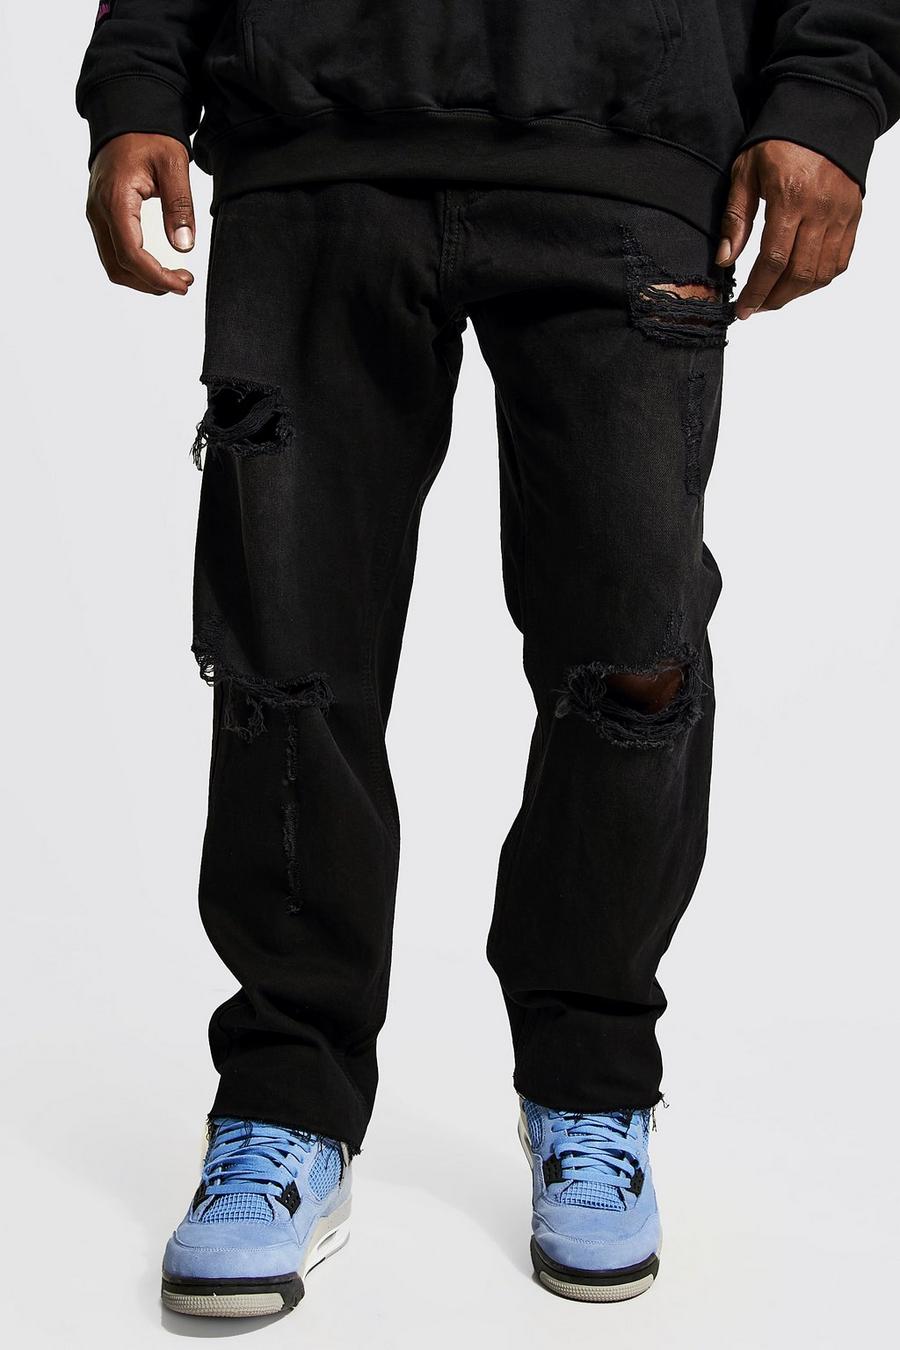 Jeans Plus Size Slim Fit strappati con fondo smagliato, Washed black